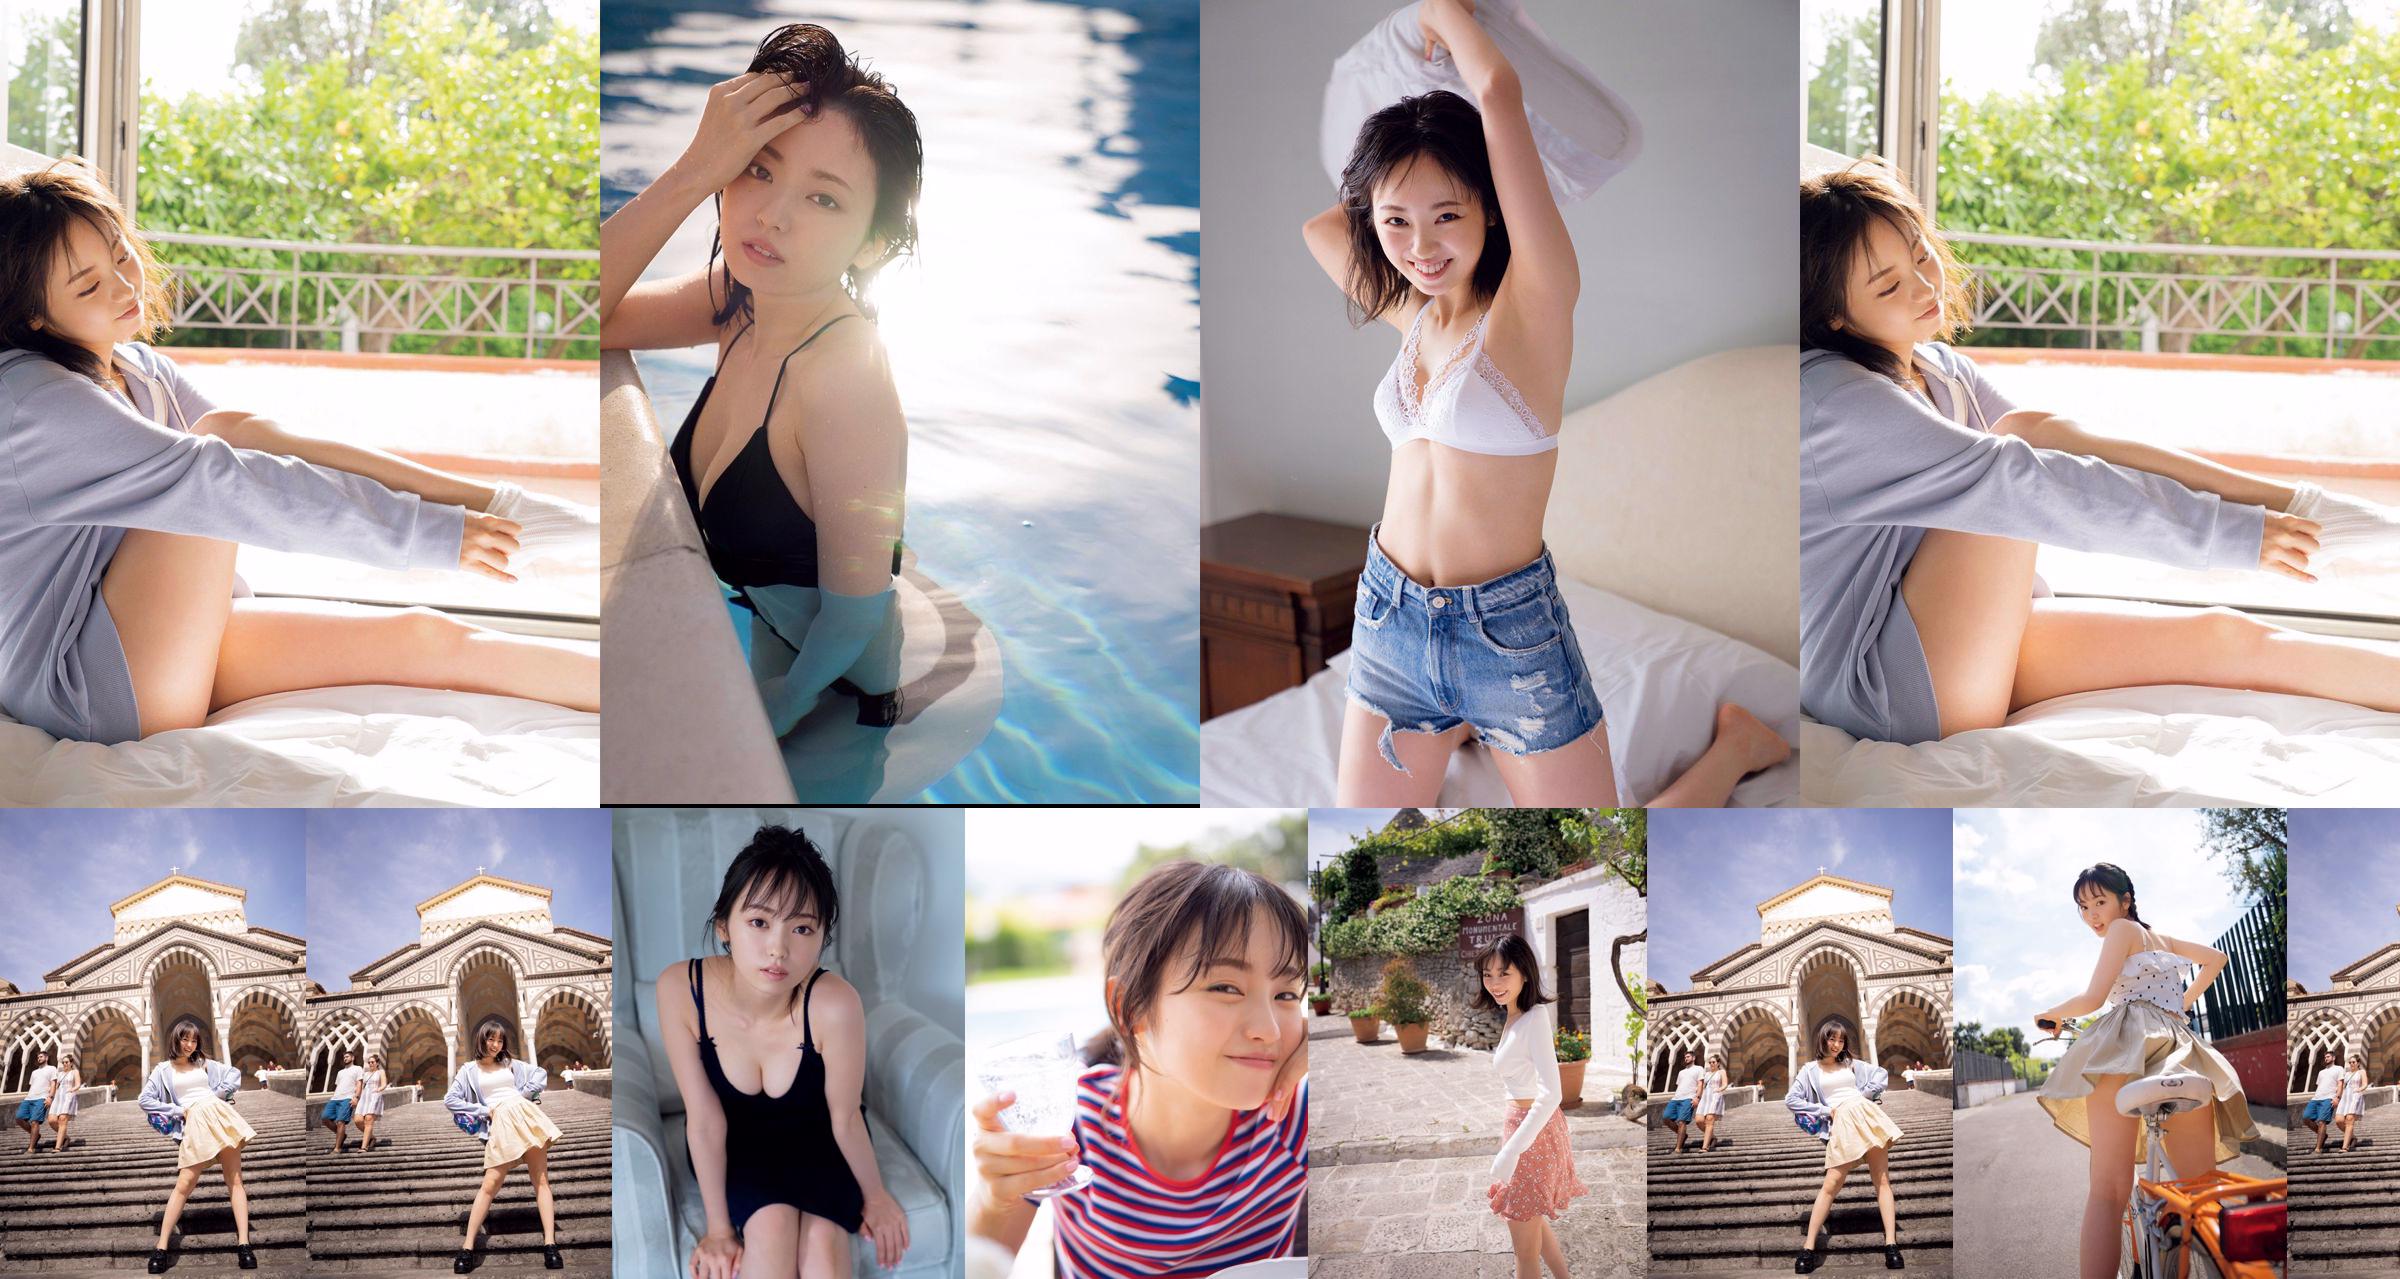 [VIERNES] Keyakizaka46, Yui Imaizumi "Traje de baño y lencería de" ¡Primero y último! "" Foto No.9ef613 Página 1